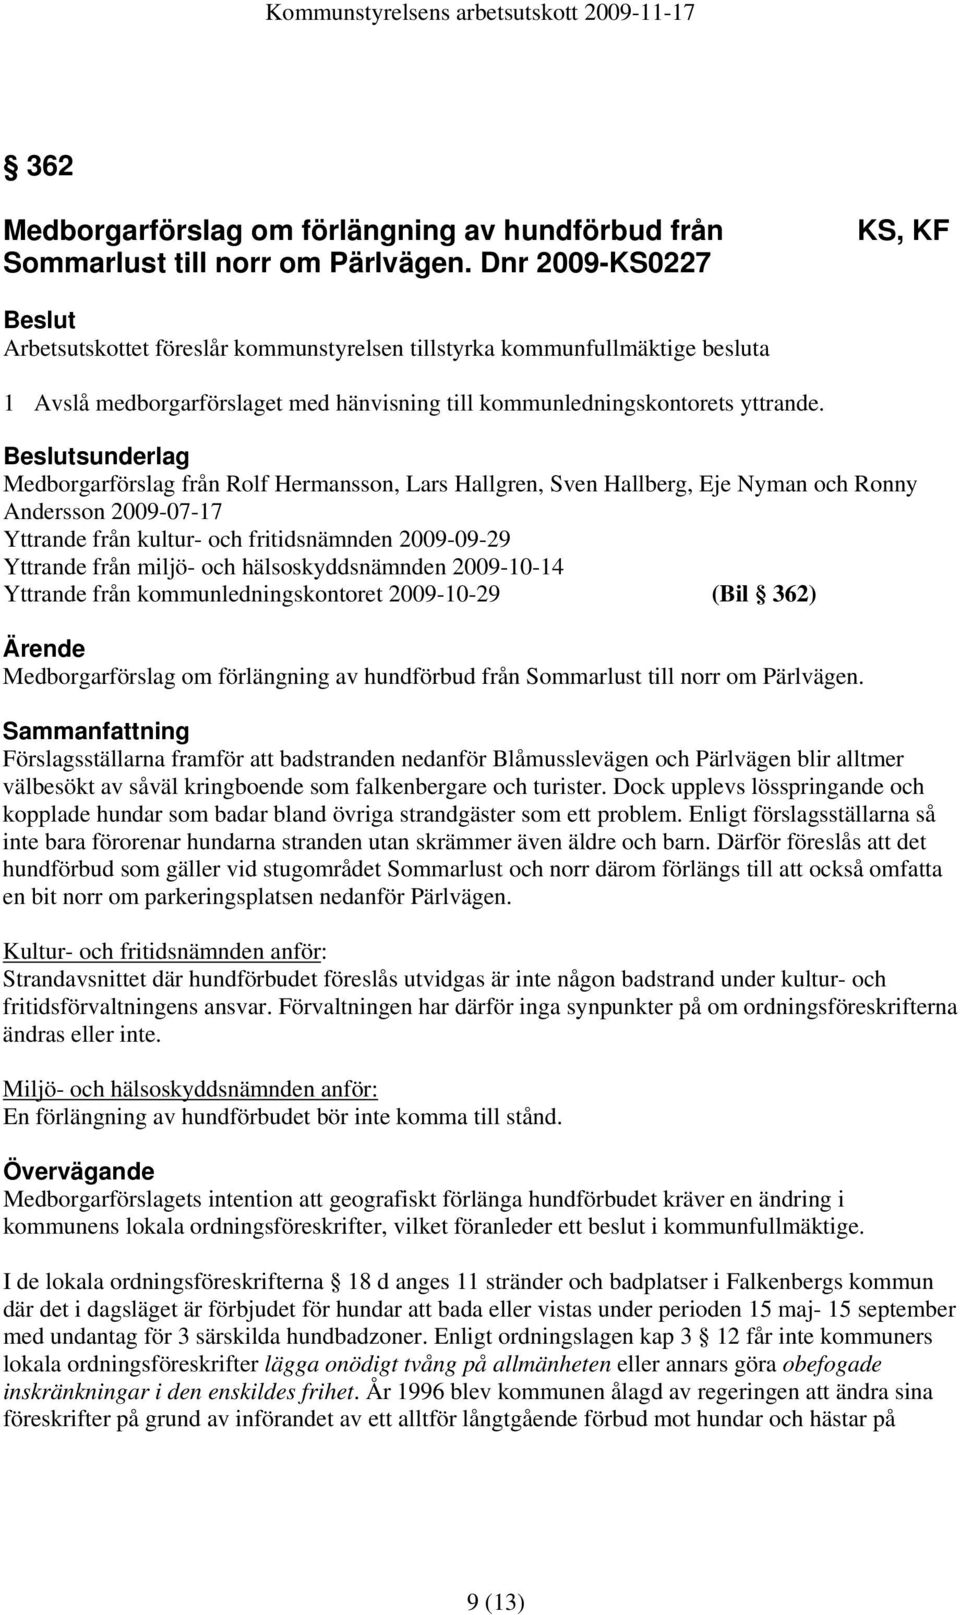 hälsoskyddsnämnden 2009-10-14 Yttrande från kommunledningskontoret 2009-10-29 (Bil 362) Medborgarförslag om förlängning av hundförbud från Sommarlust till norr om Pärlvägen.